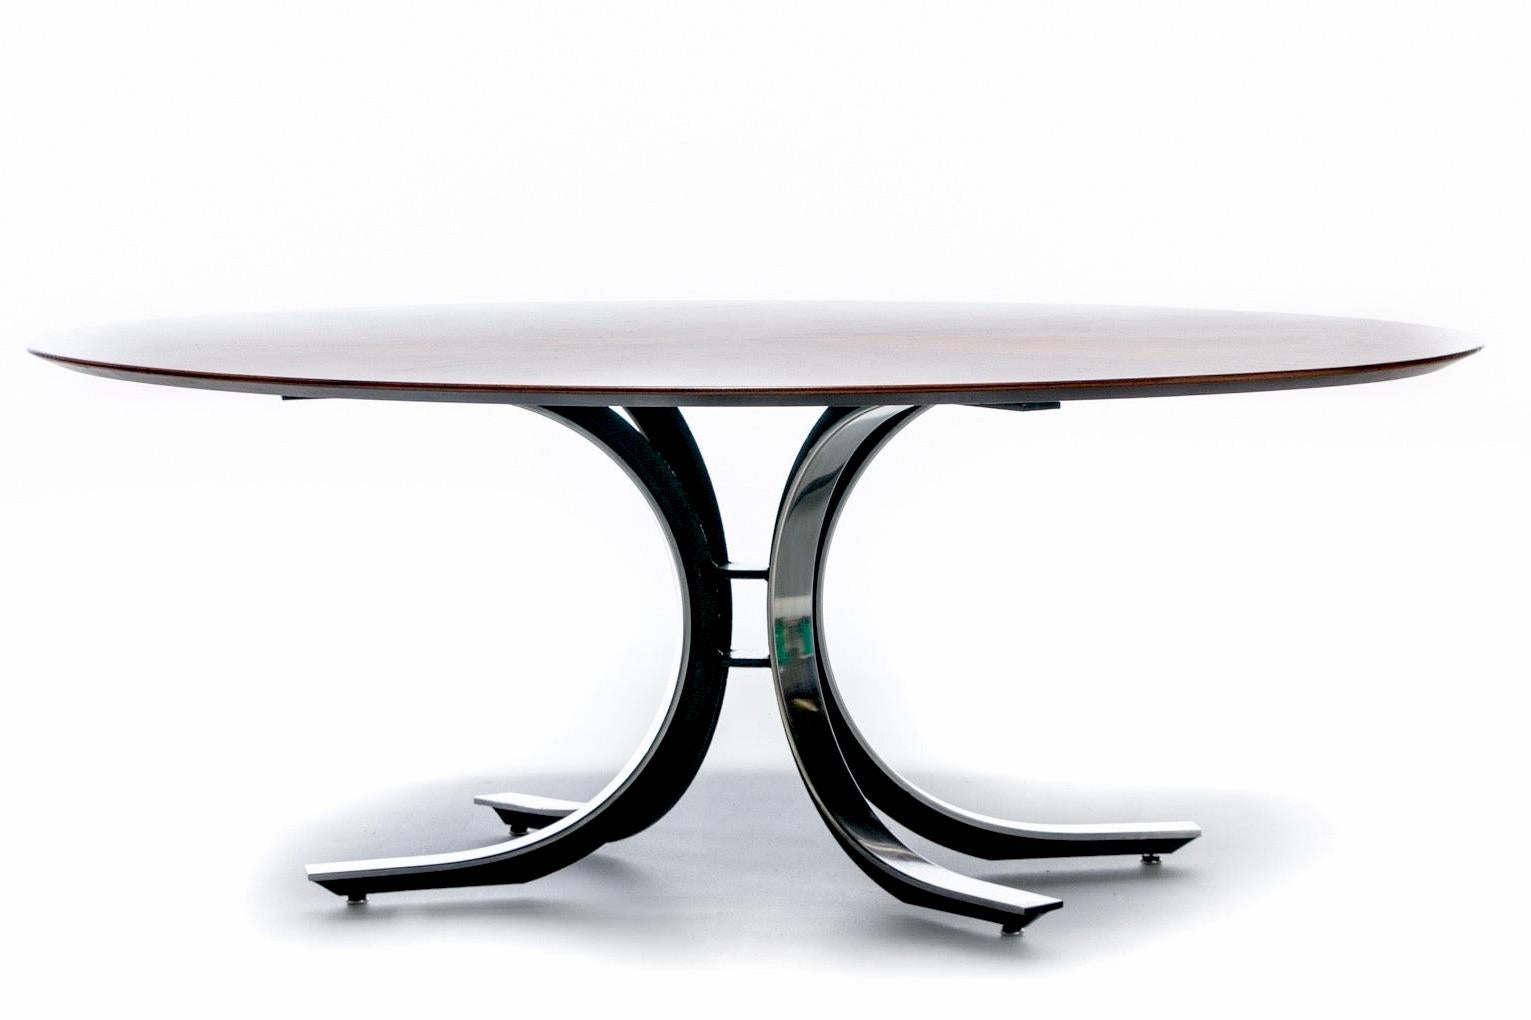 Late 20th Century Osvaldo Borsani Walnut & Stainless Steel Oval Dining Table, c. 1970s